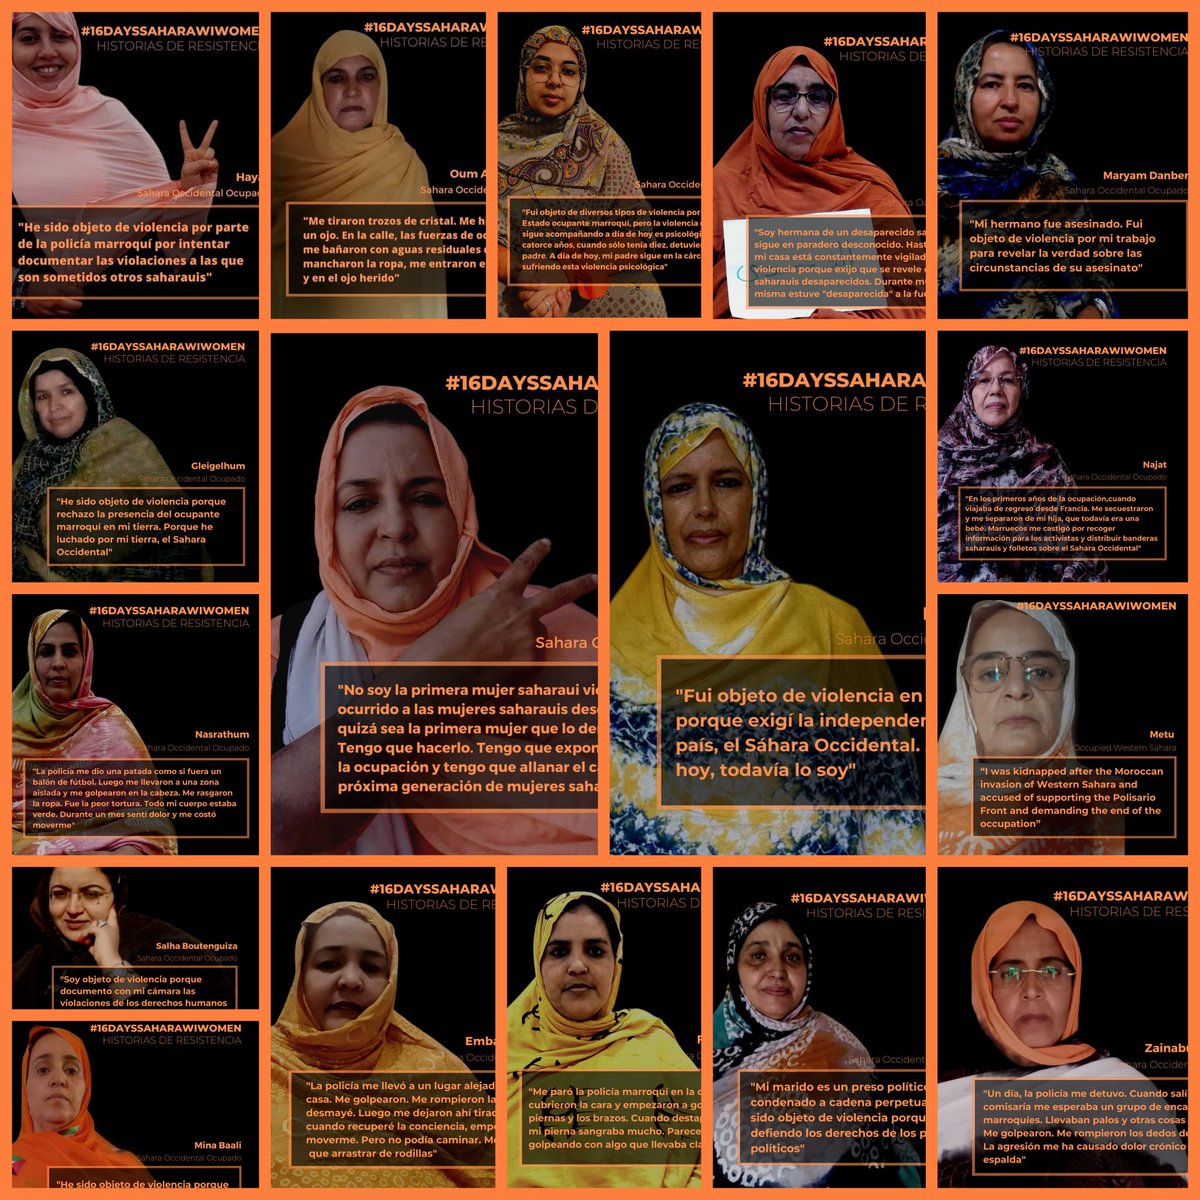 Durante 16 días hemos compartido el testimonio de mujeres saharauis que lideran la lucha por la libertad del #SaharaOccidental y la defensa de los #DDHH, a pesar de la sistemática represión que sufren. Son un ejemplo de la resistencia bajo la ogupación. #16DaysSaharawiWomen #10D